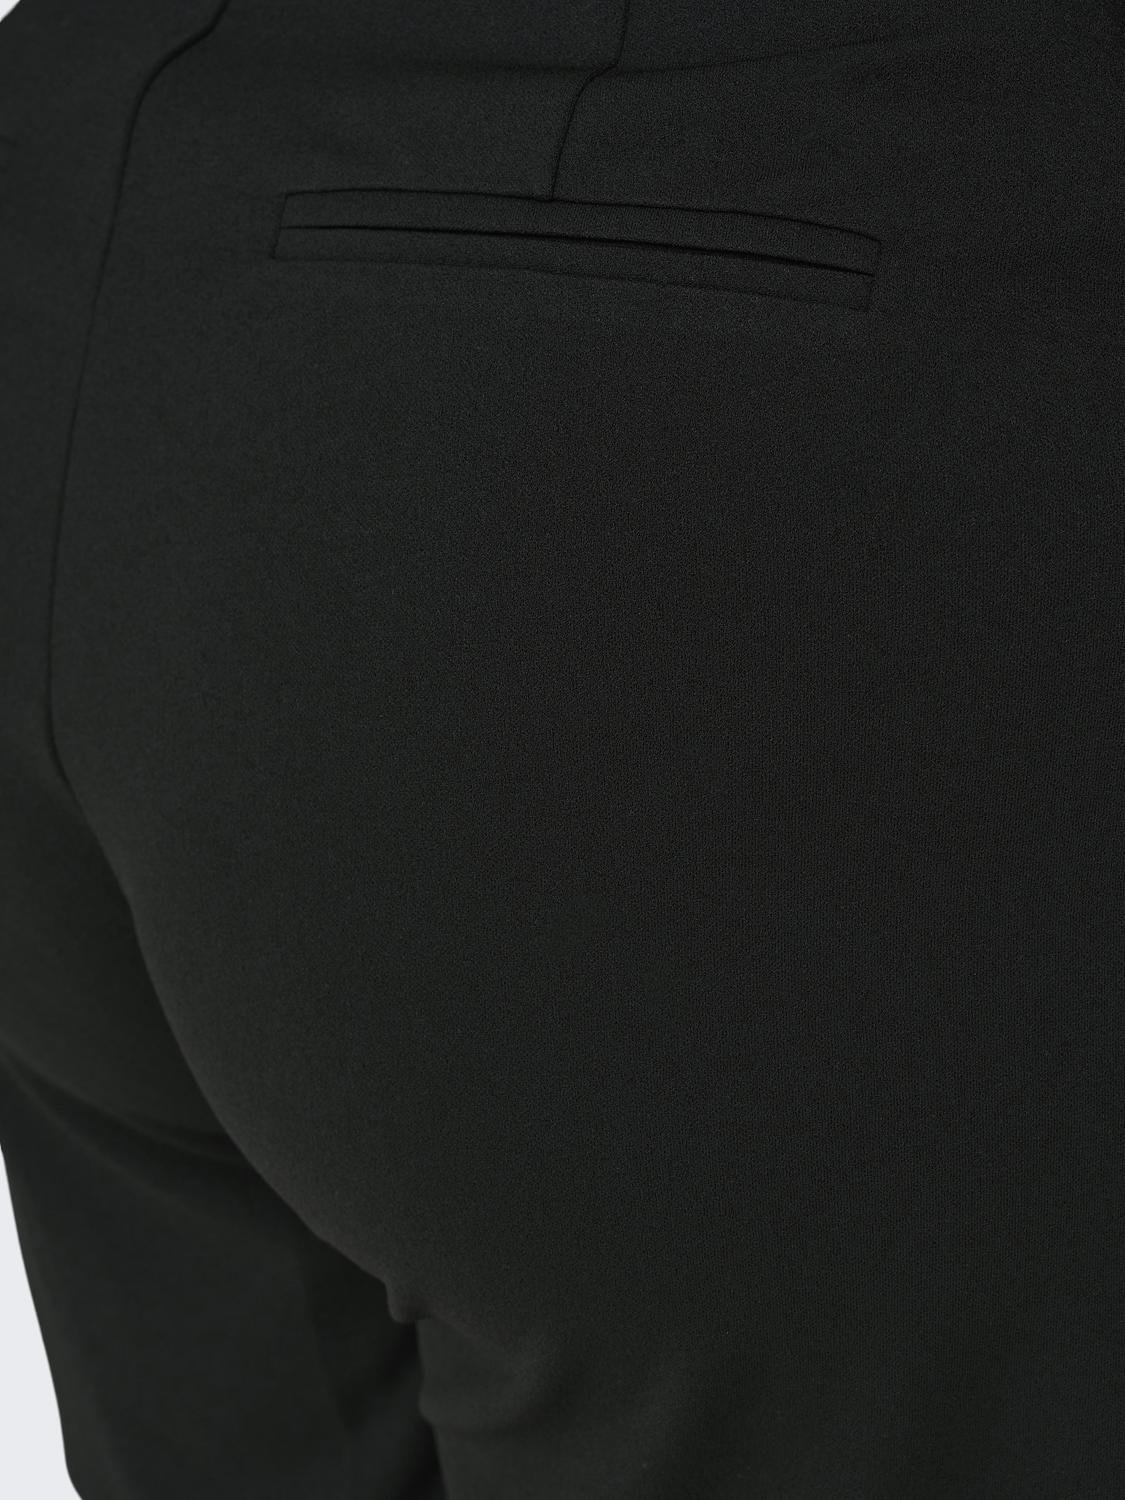 ONLY Shorts Corte regular Cintura media -Black - 15306948